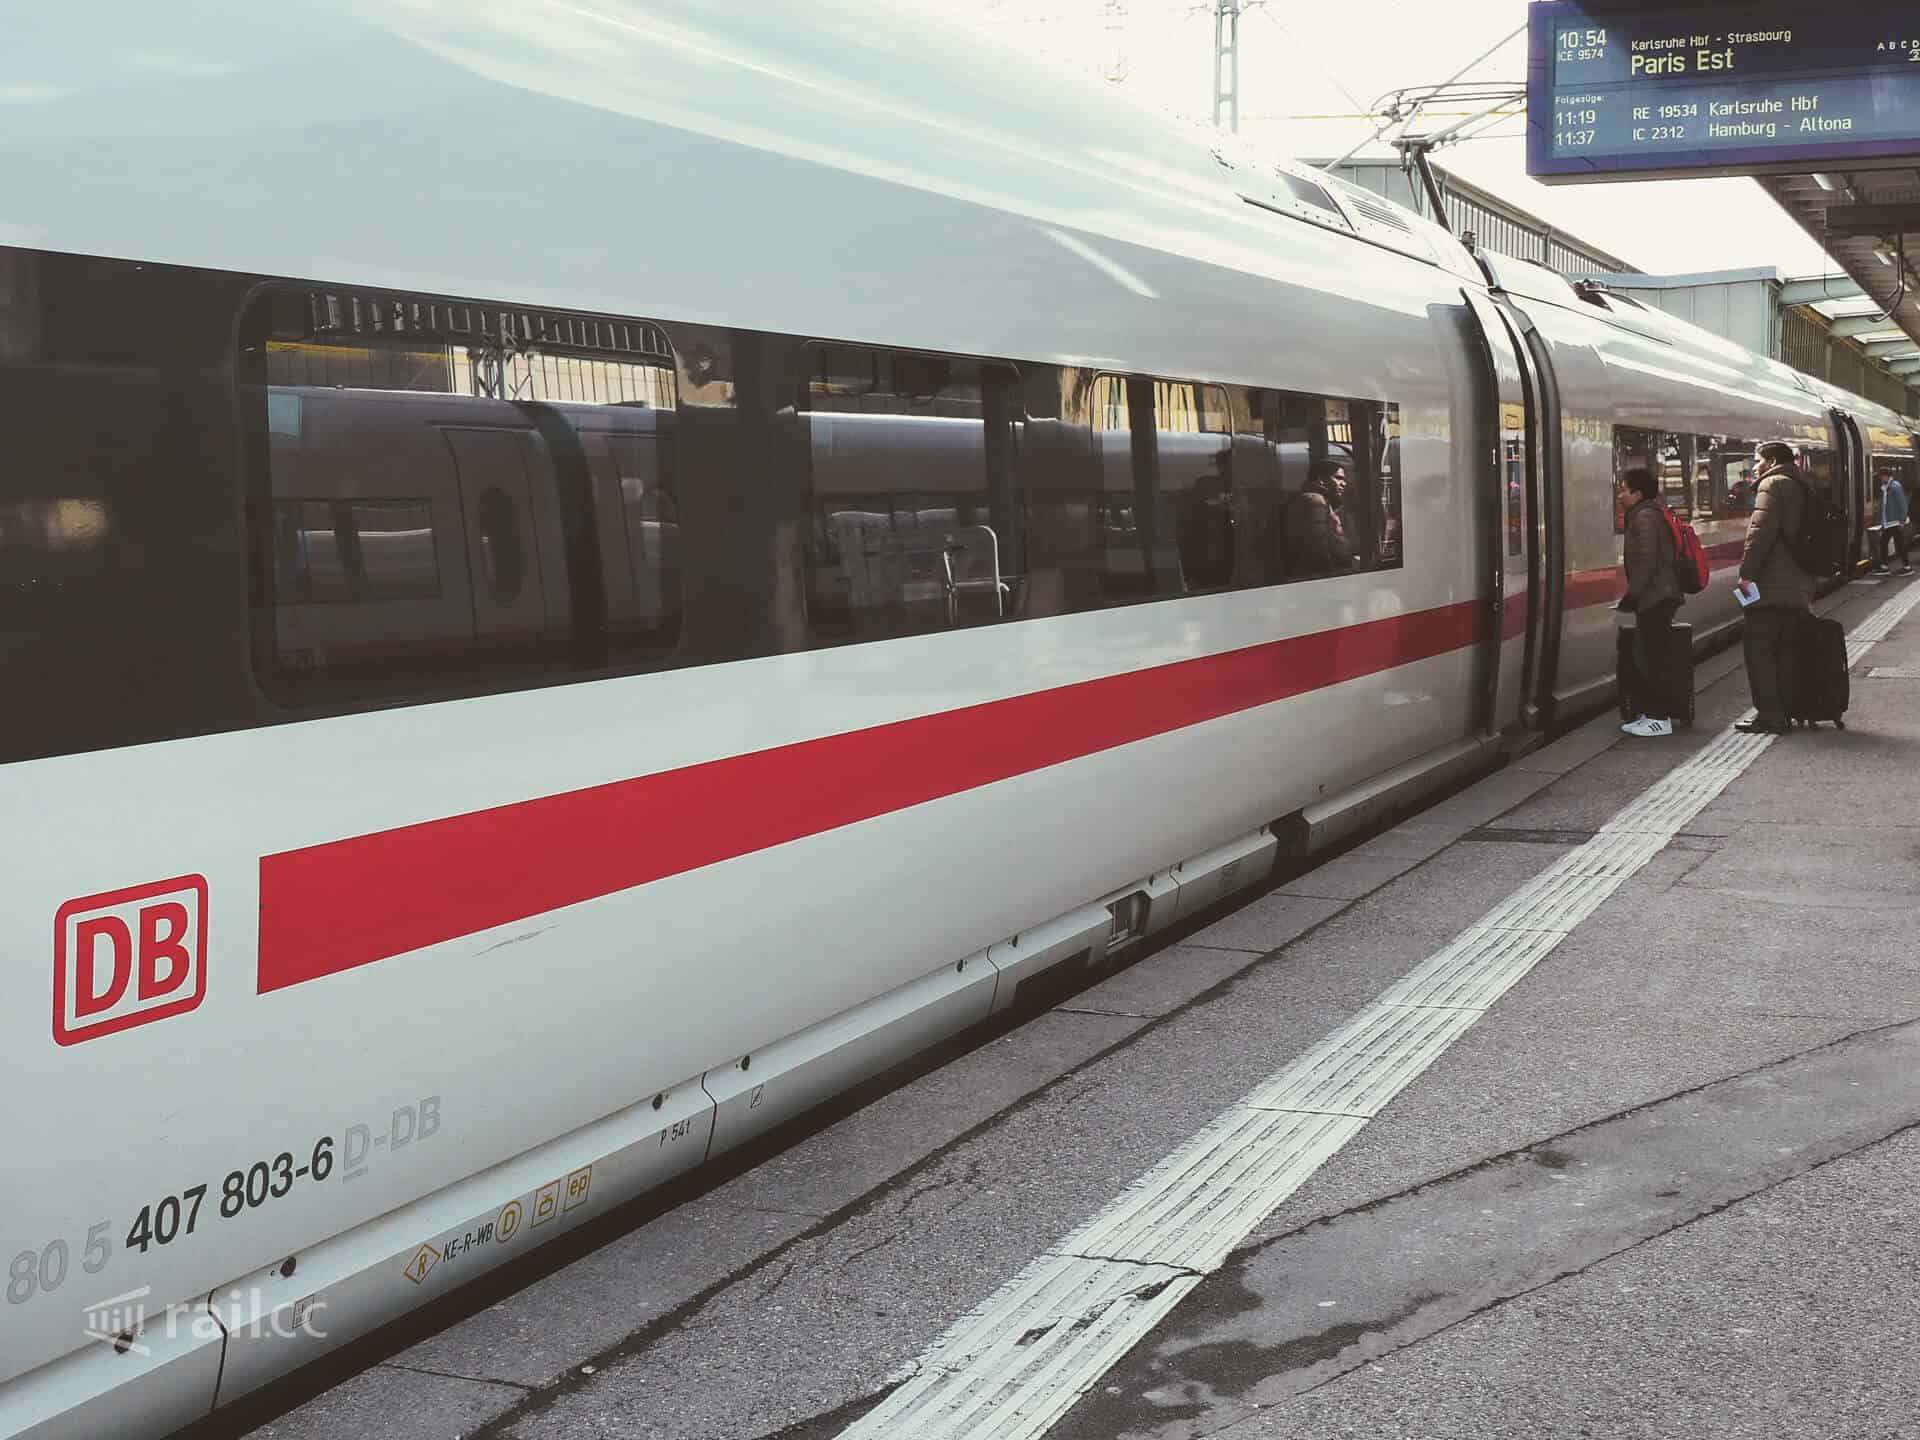 Von Stuttgart nach Paris mit dem ICE zum Sparpreis | rail.cc